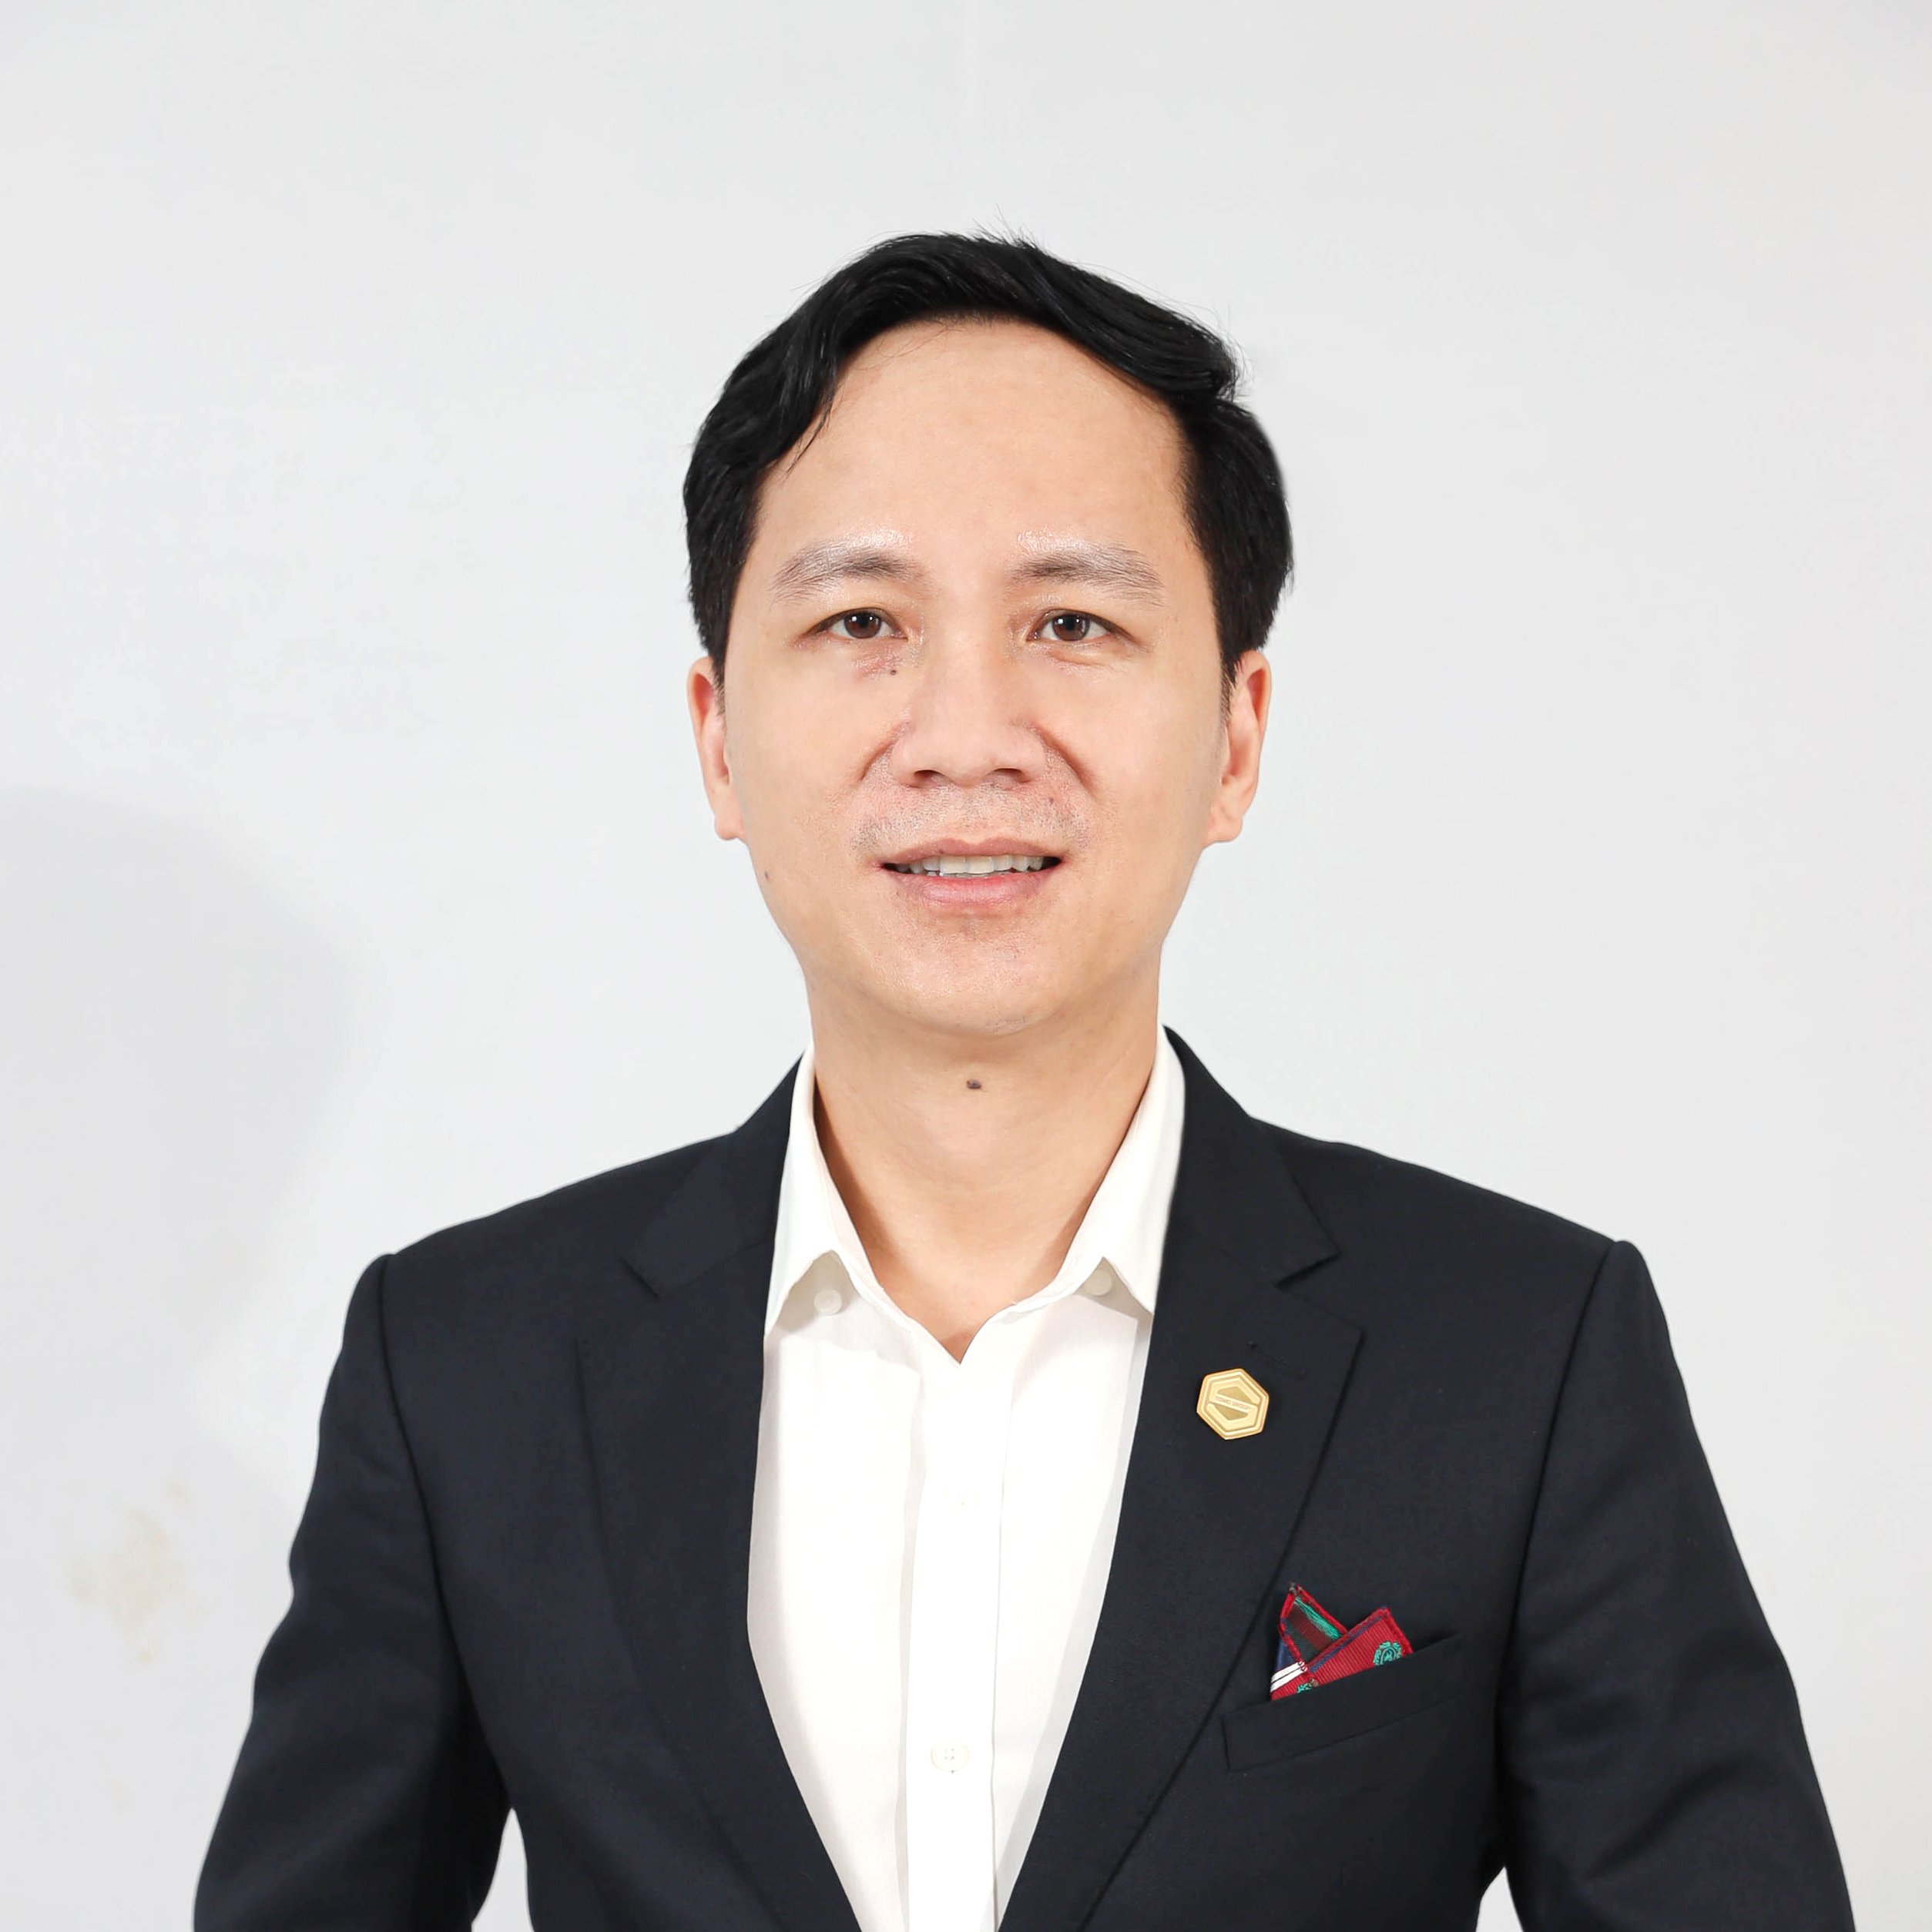 Co-Founder - Mr. Nguyễn Lâm Vinh Dự